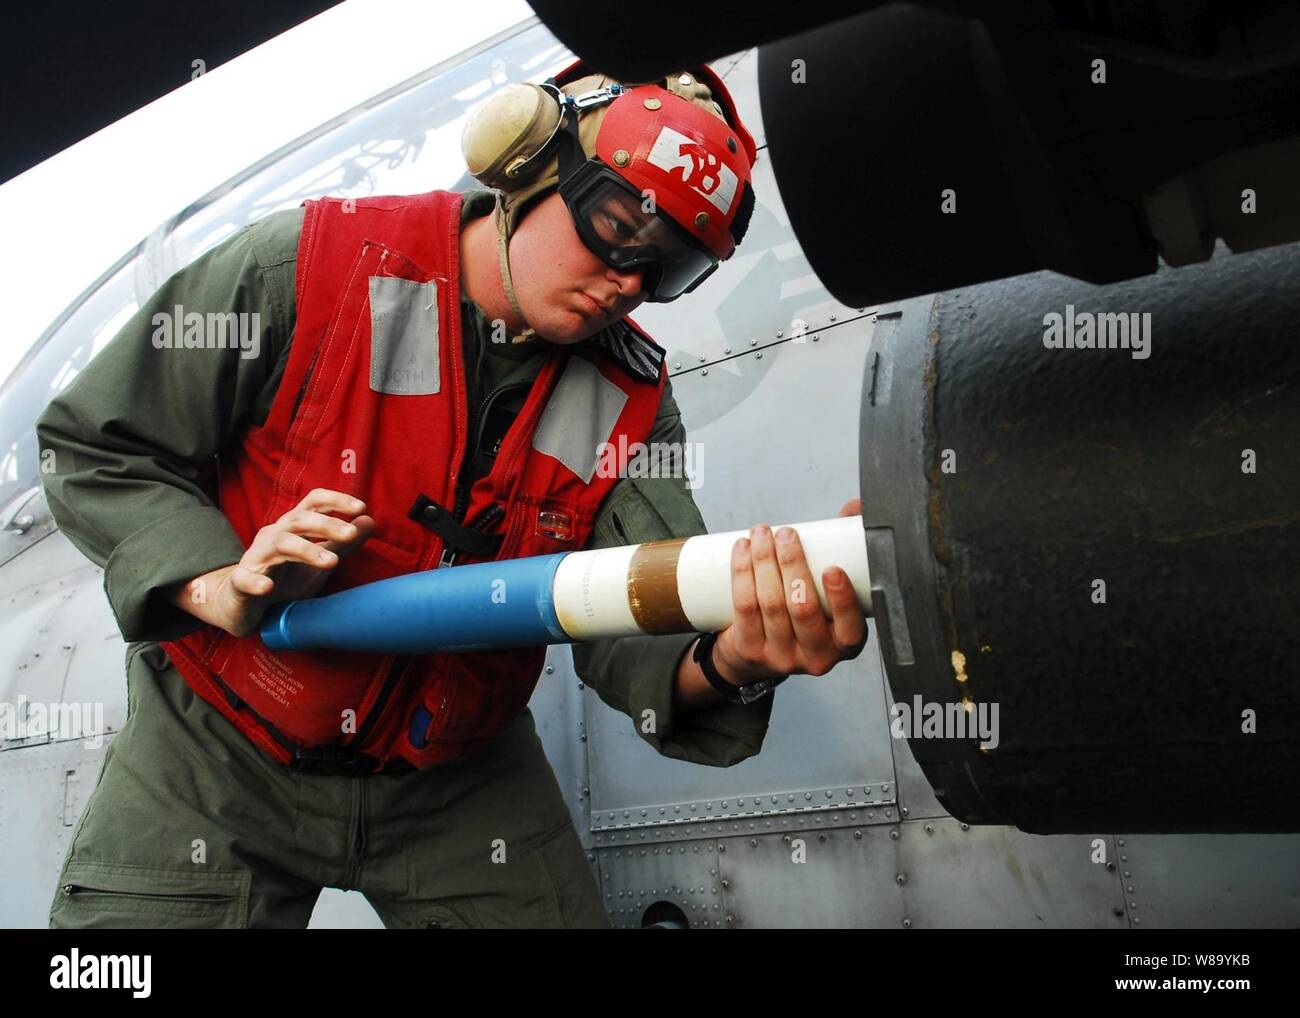 Le Corps des Marines des États-Unis. Jeremy charge un stand 2,75 pouces sur une fusée U.S. Marine Corps AH-1W Super Cobra hélicoptère pour un exercice de tir réel à bord du navire d'assaut amphibie USS Essex (DG 2) dans la mer des Philippines au cours de Keen Sword 2011 le 9 décembre 2010. Keen Sword est un accord bilatéral entre les États-Unis et le Japon en vue de l'exercice visant à renforcer les opérations militaires conjointes. Banque D'Images